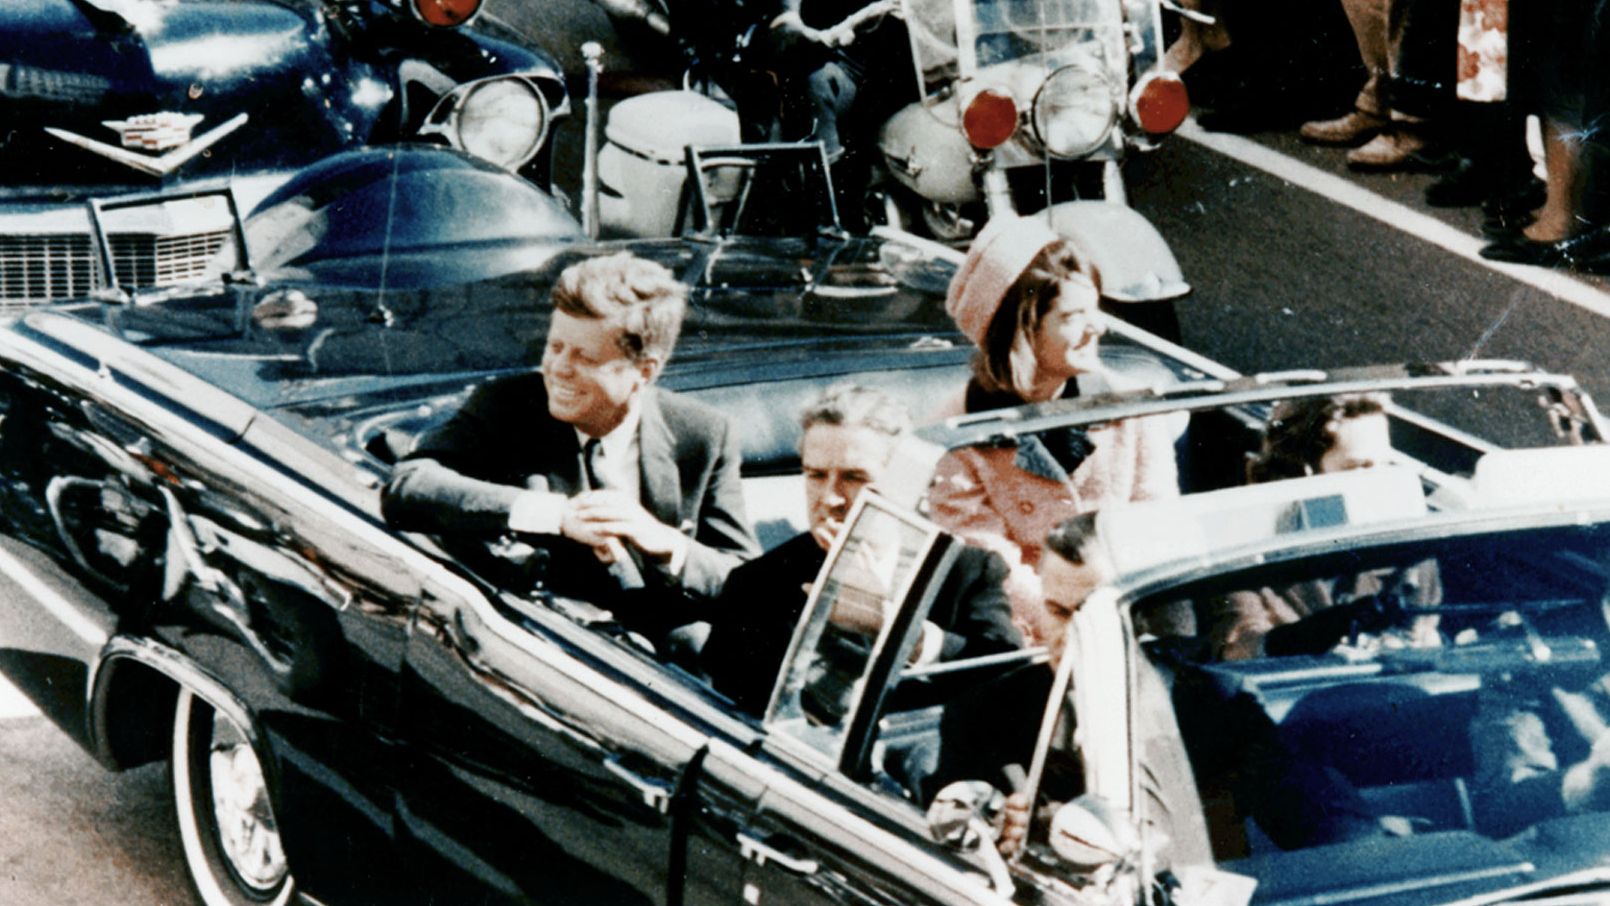 La reconocida imagen de John F. Kennedy en Dallas segundos antes de su asesinato